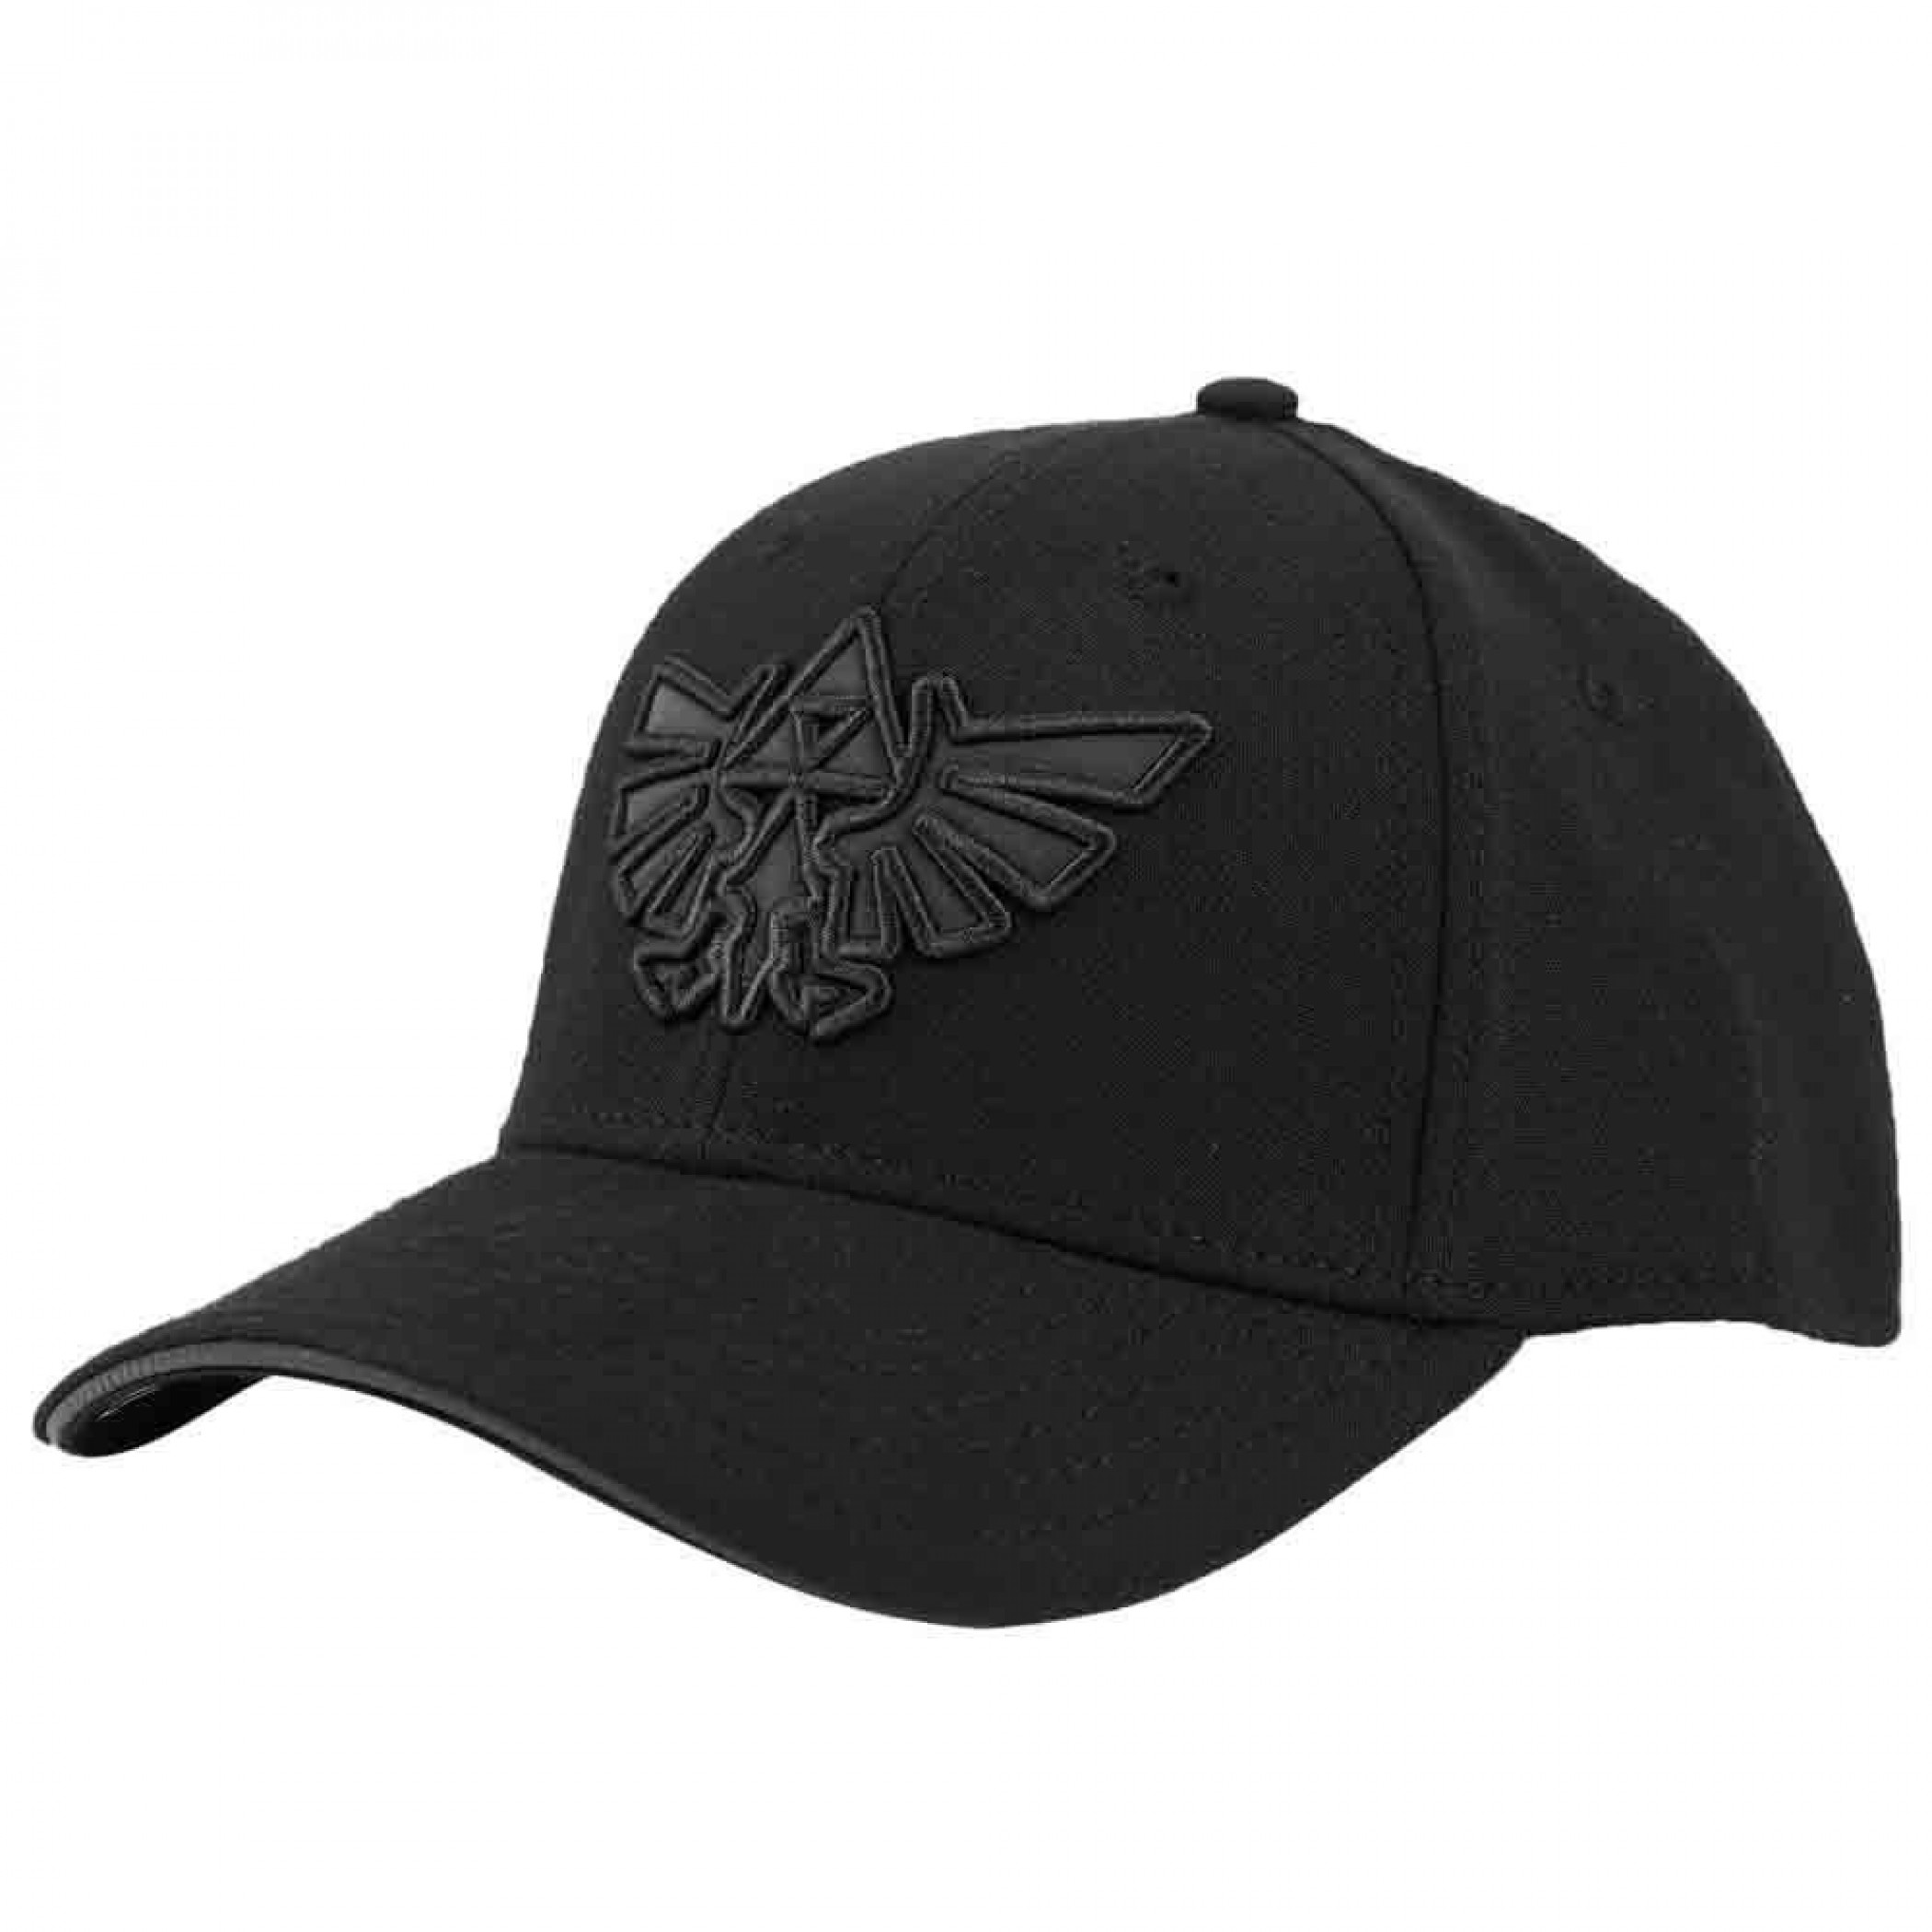 Legend of Zelda Triforce Embroidered Logo Curved Bill Snapback Hat